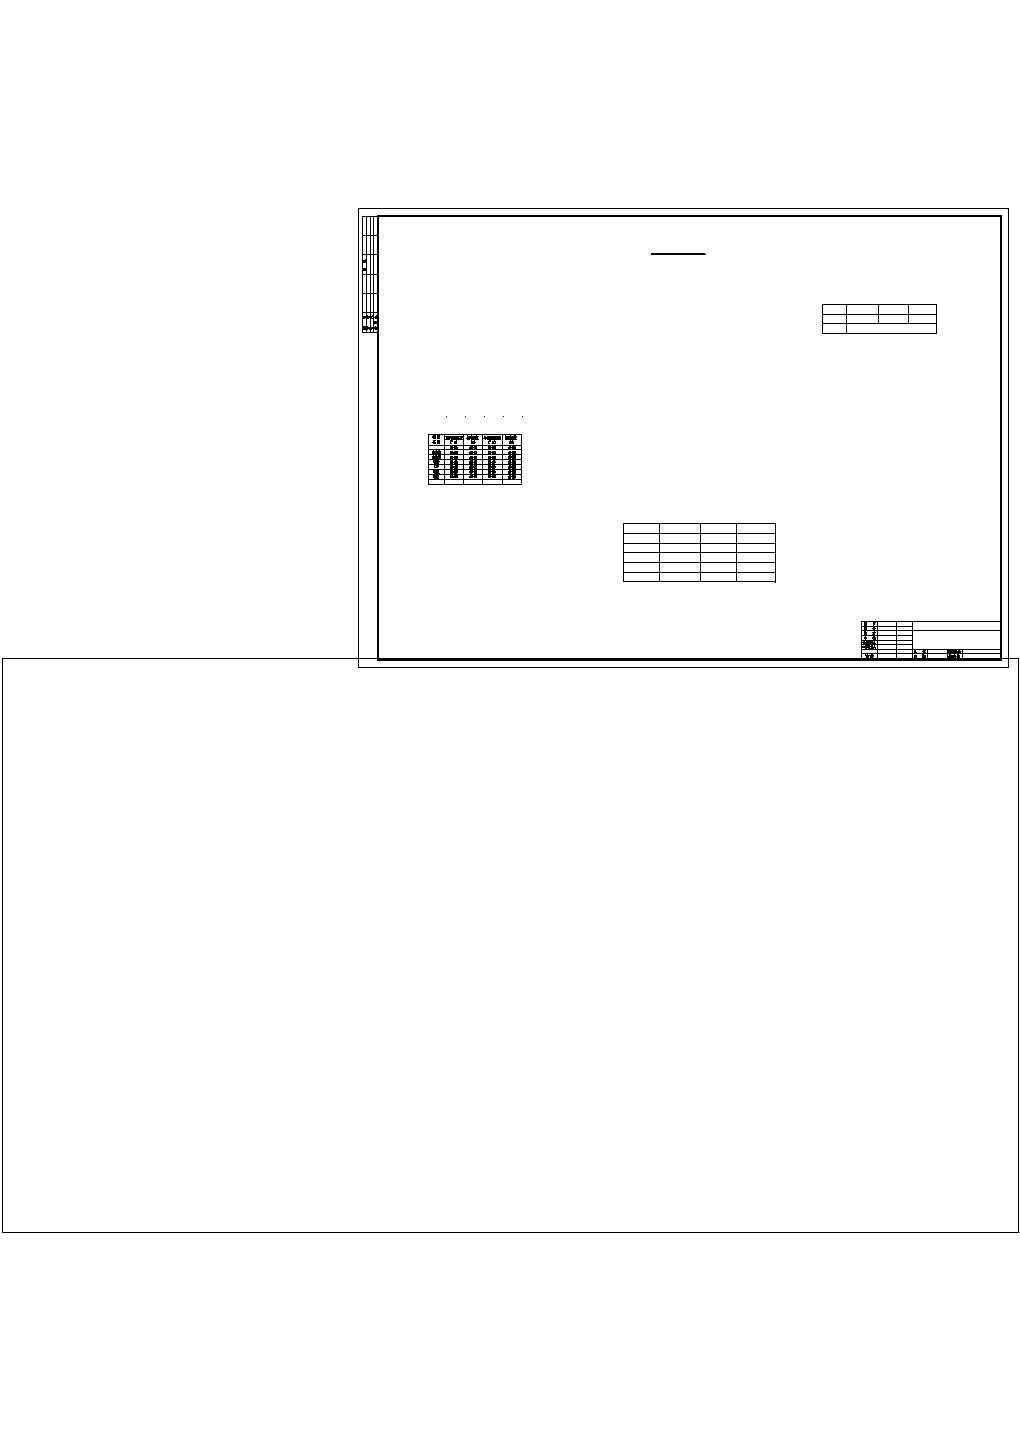 【苏州】某商业广场空调管线设计全套cad施工图纸(含总平面图)